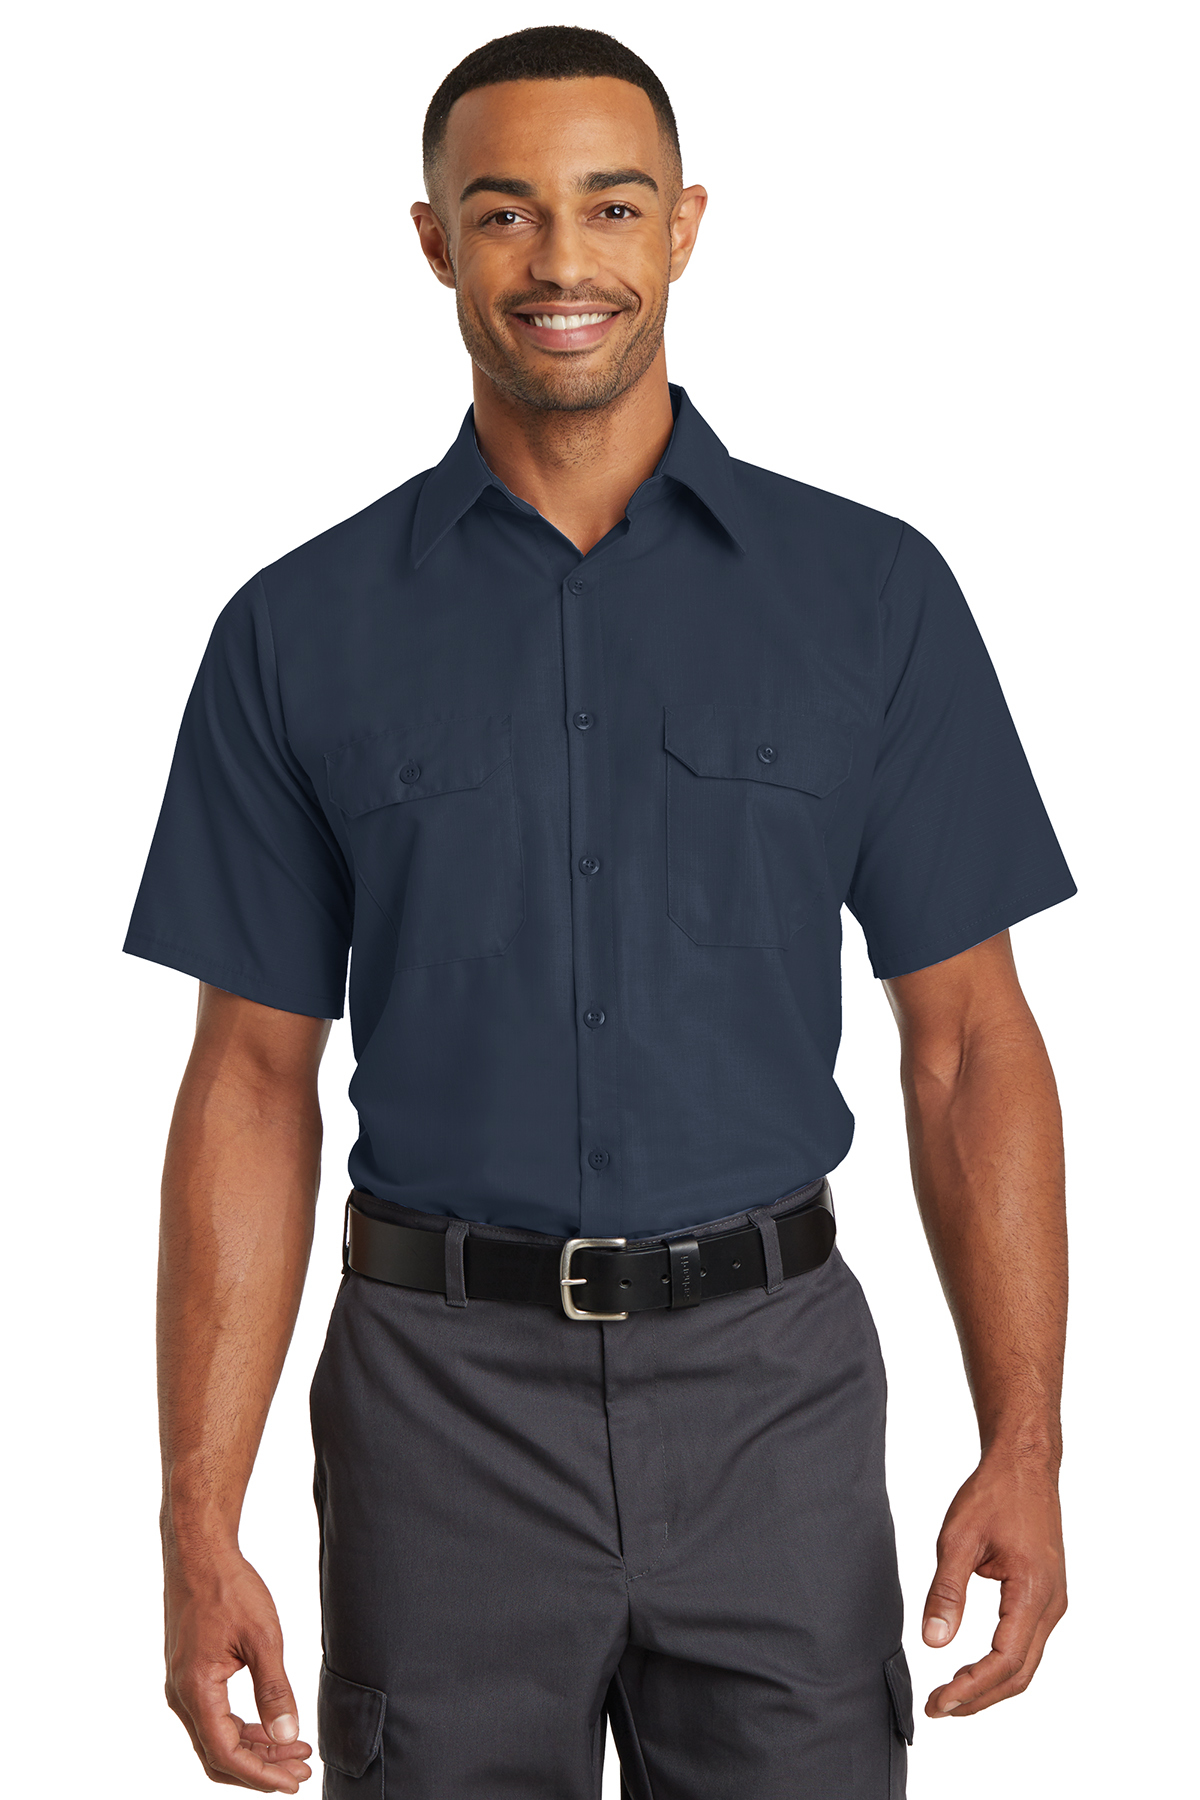 Navy Red Kap Mens Solid Rip Stop Shirt Short Sleeve Large